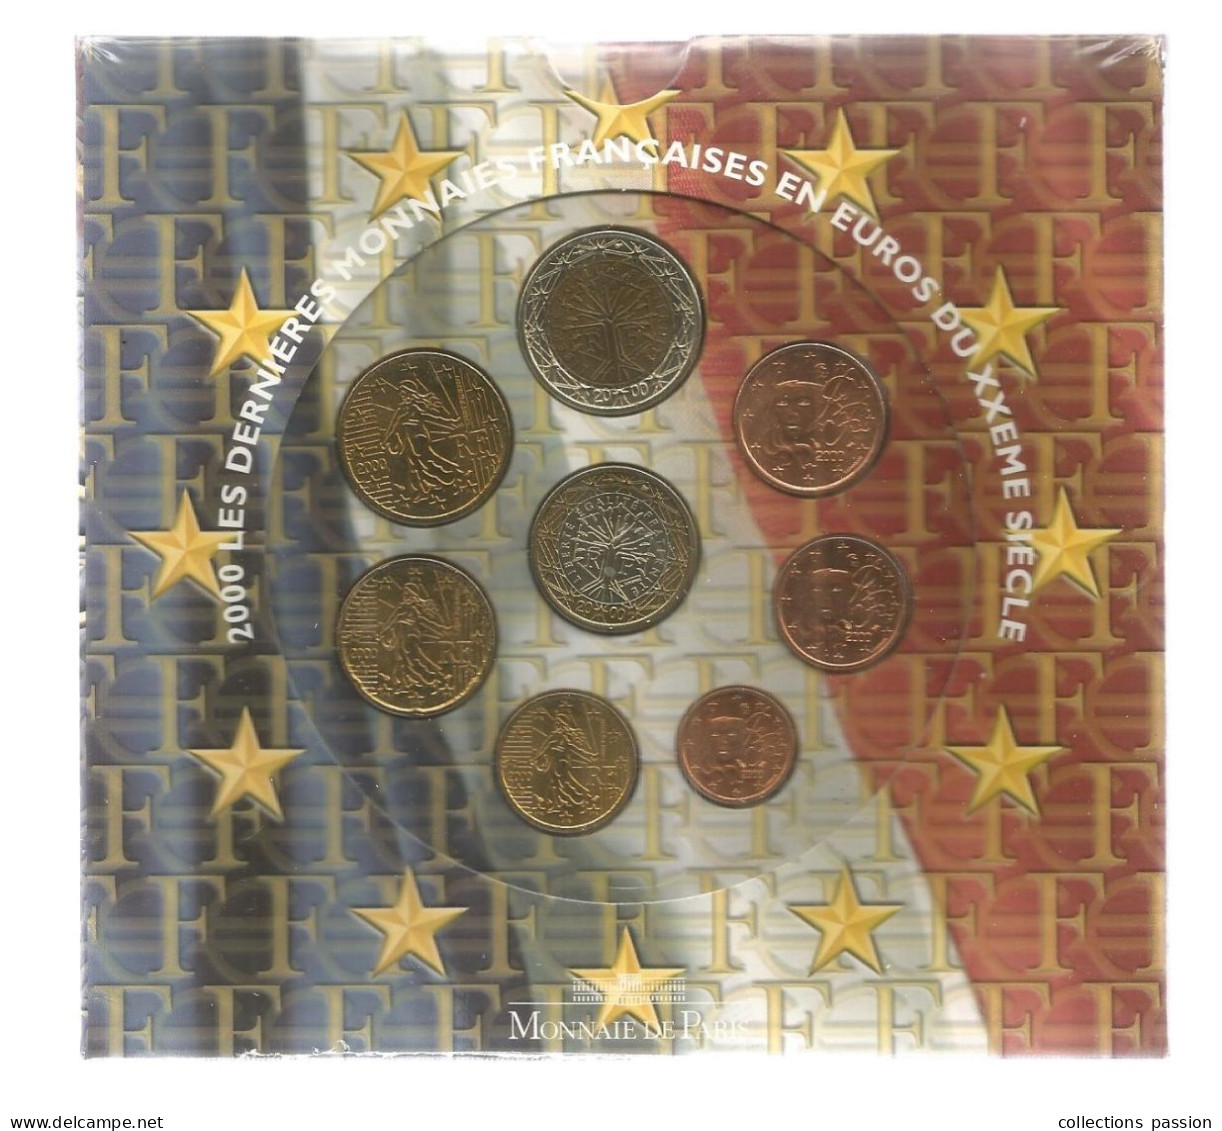 Monnaie, Coffret, Emballage D'origine Scéllé, EURO France, Brillant Universel , Série Officielle, 2000, Frais Fr 3.50 E - Francia